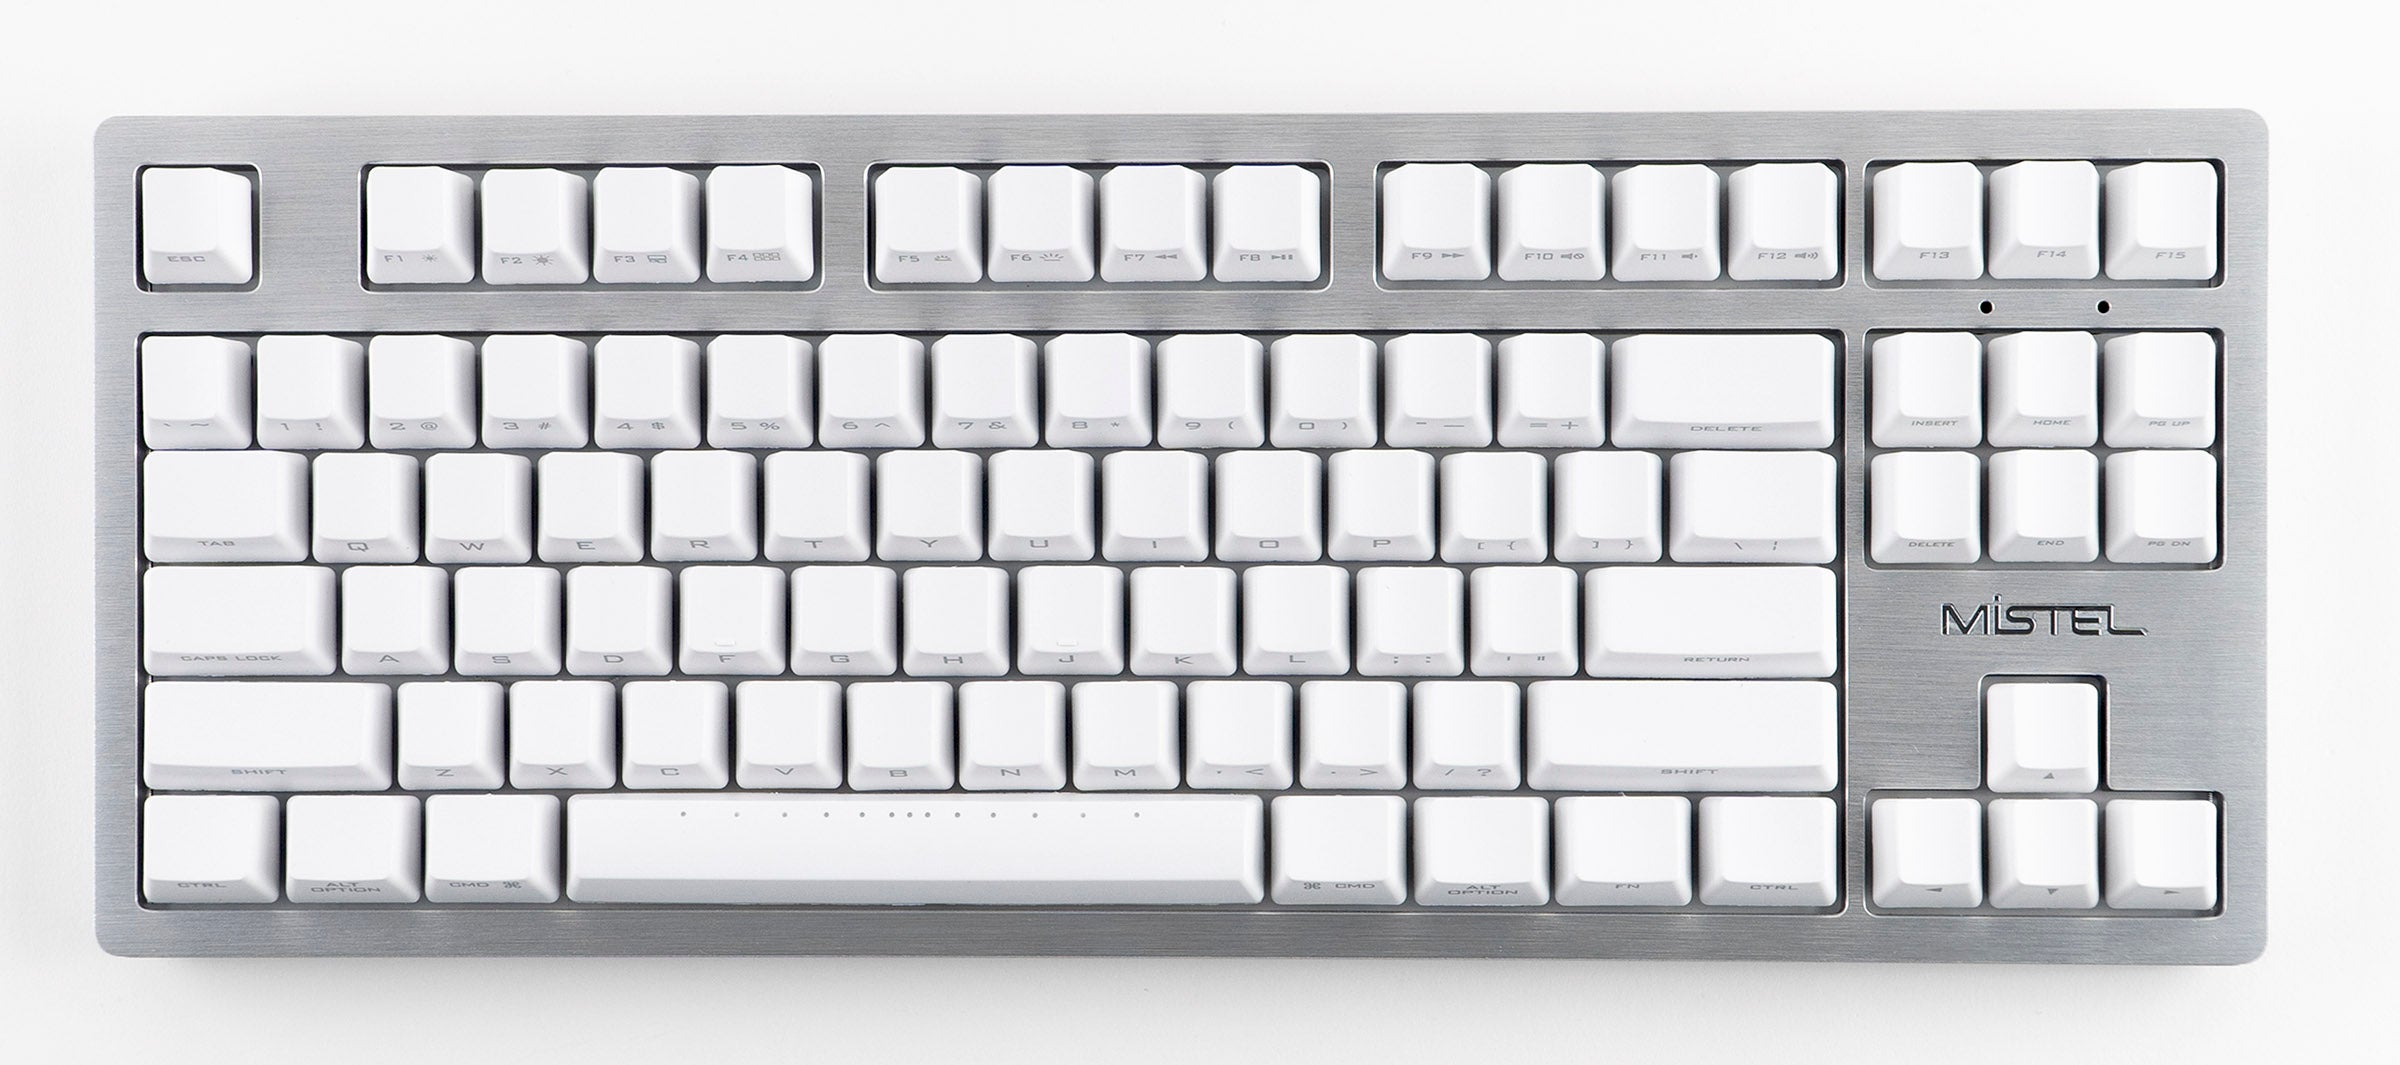 Mistel Sleeker Silver TKL Mechanical Keyboard